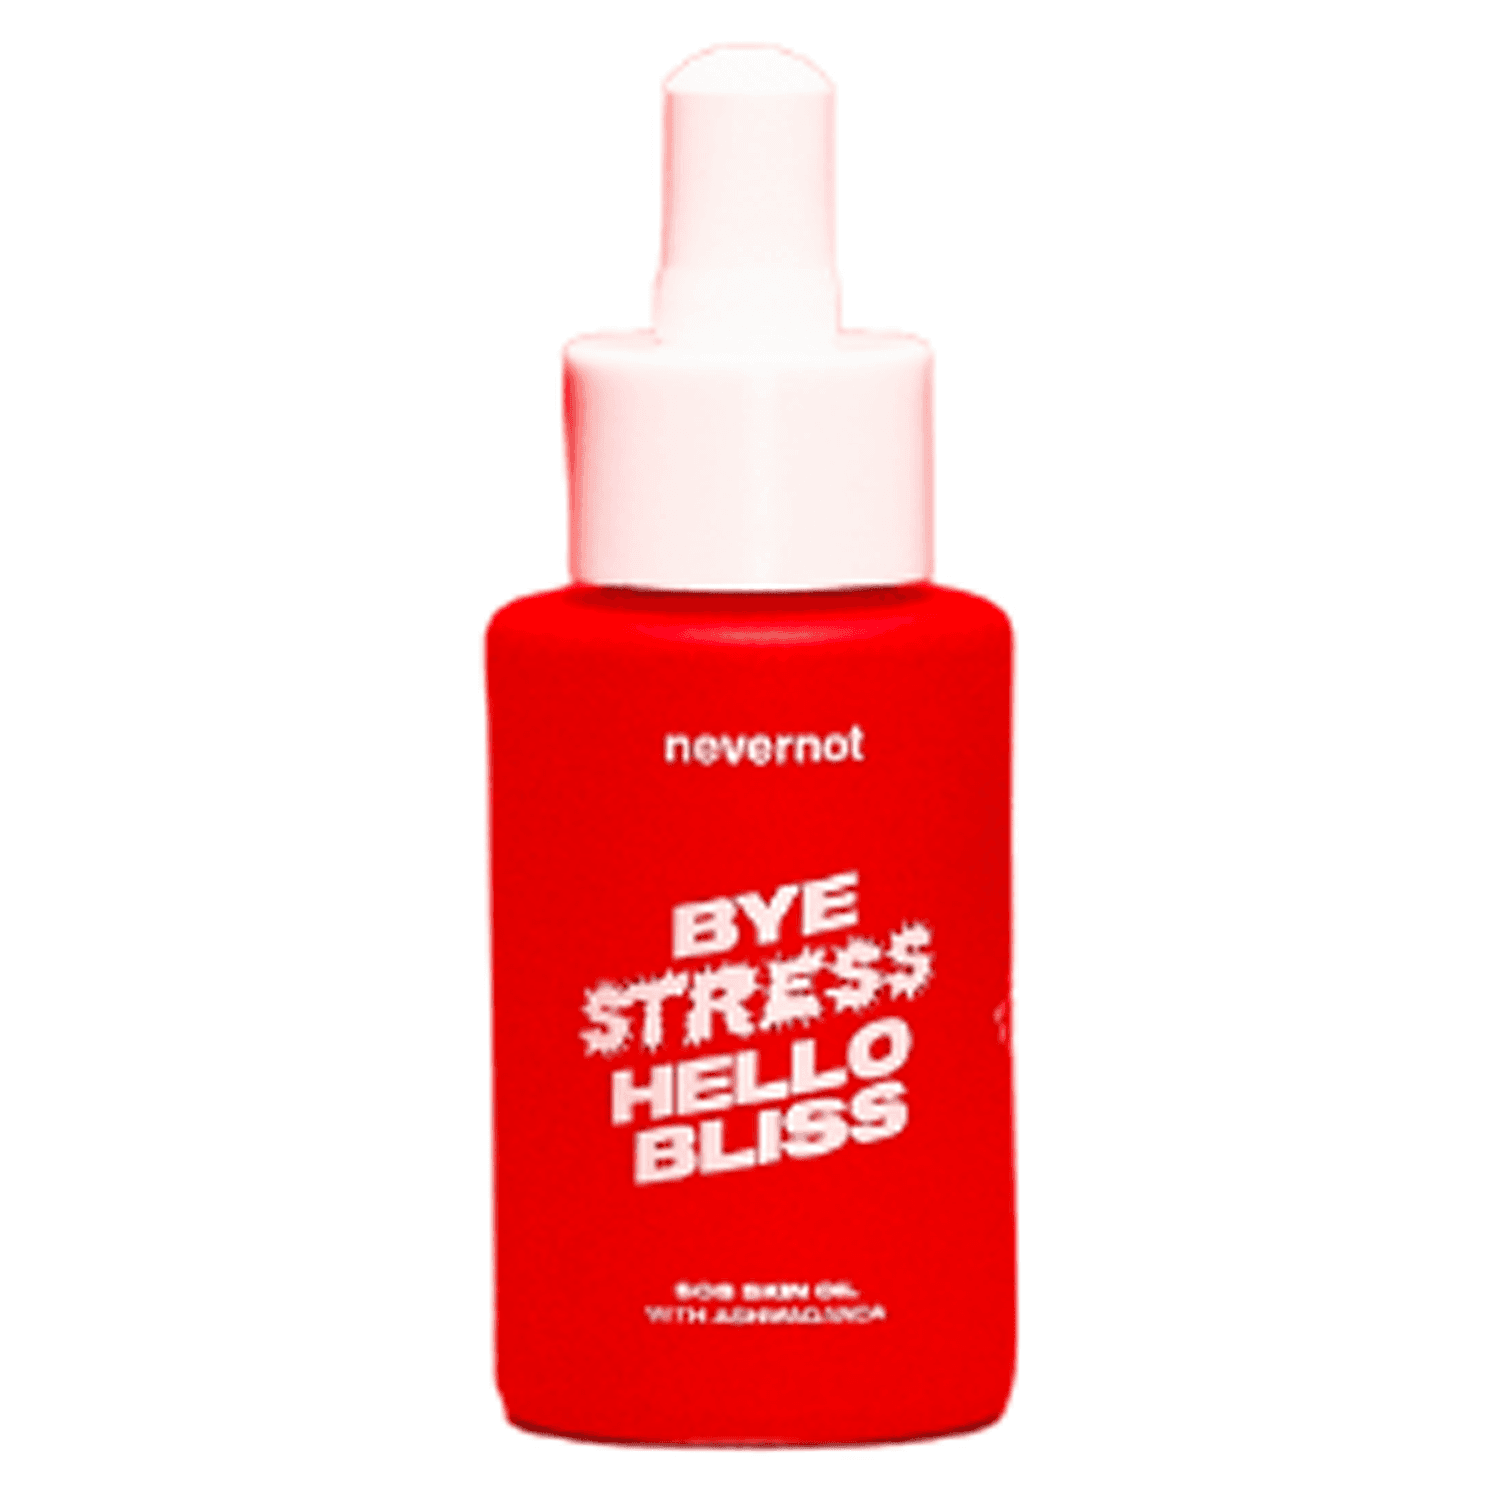 nevernot - SOS Skin Oil